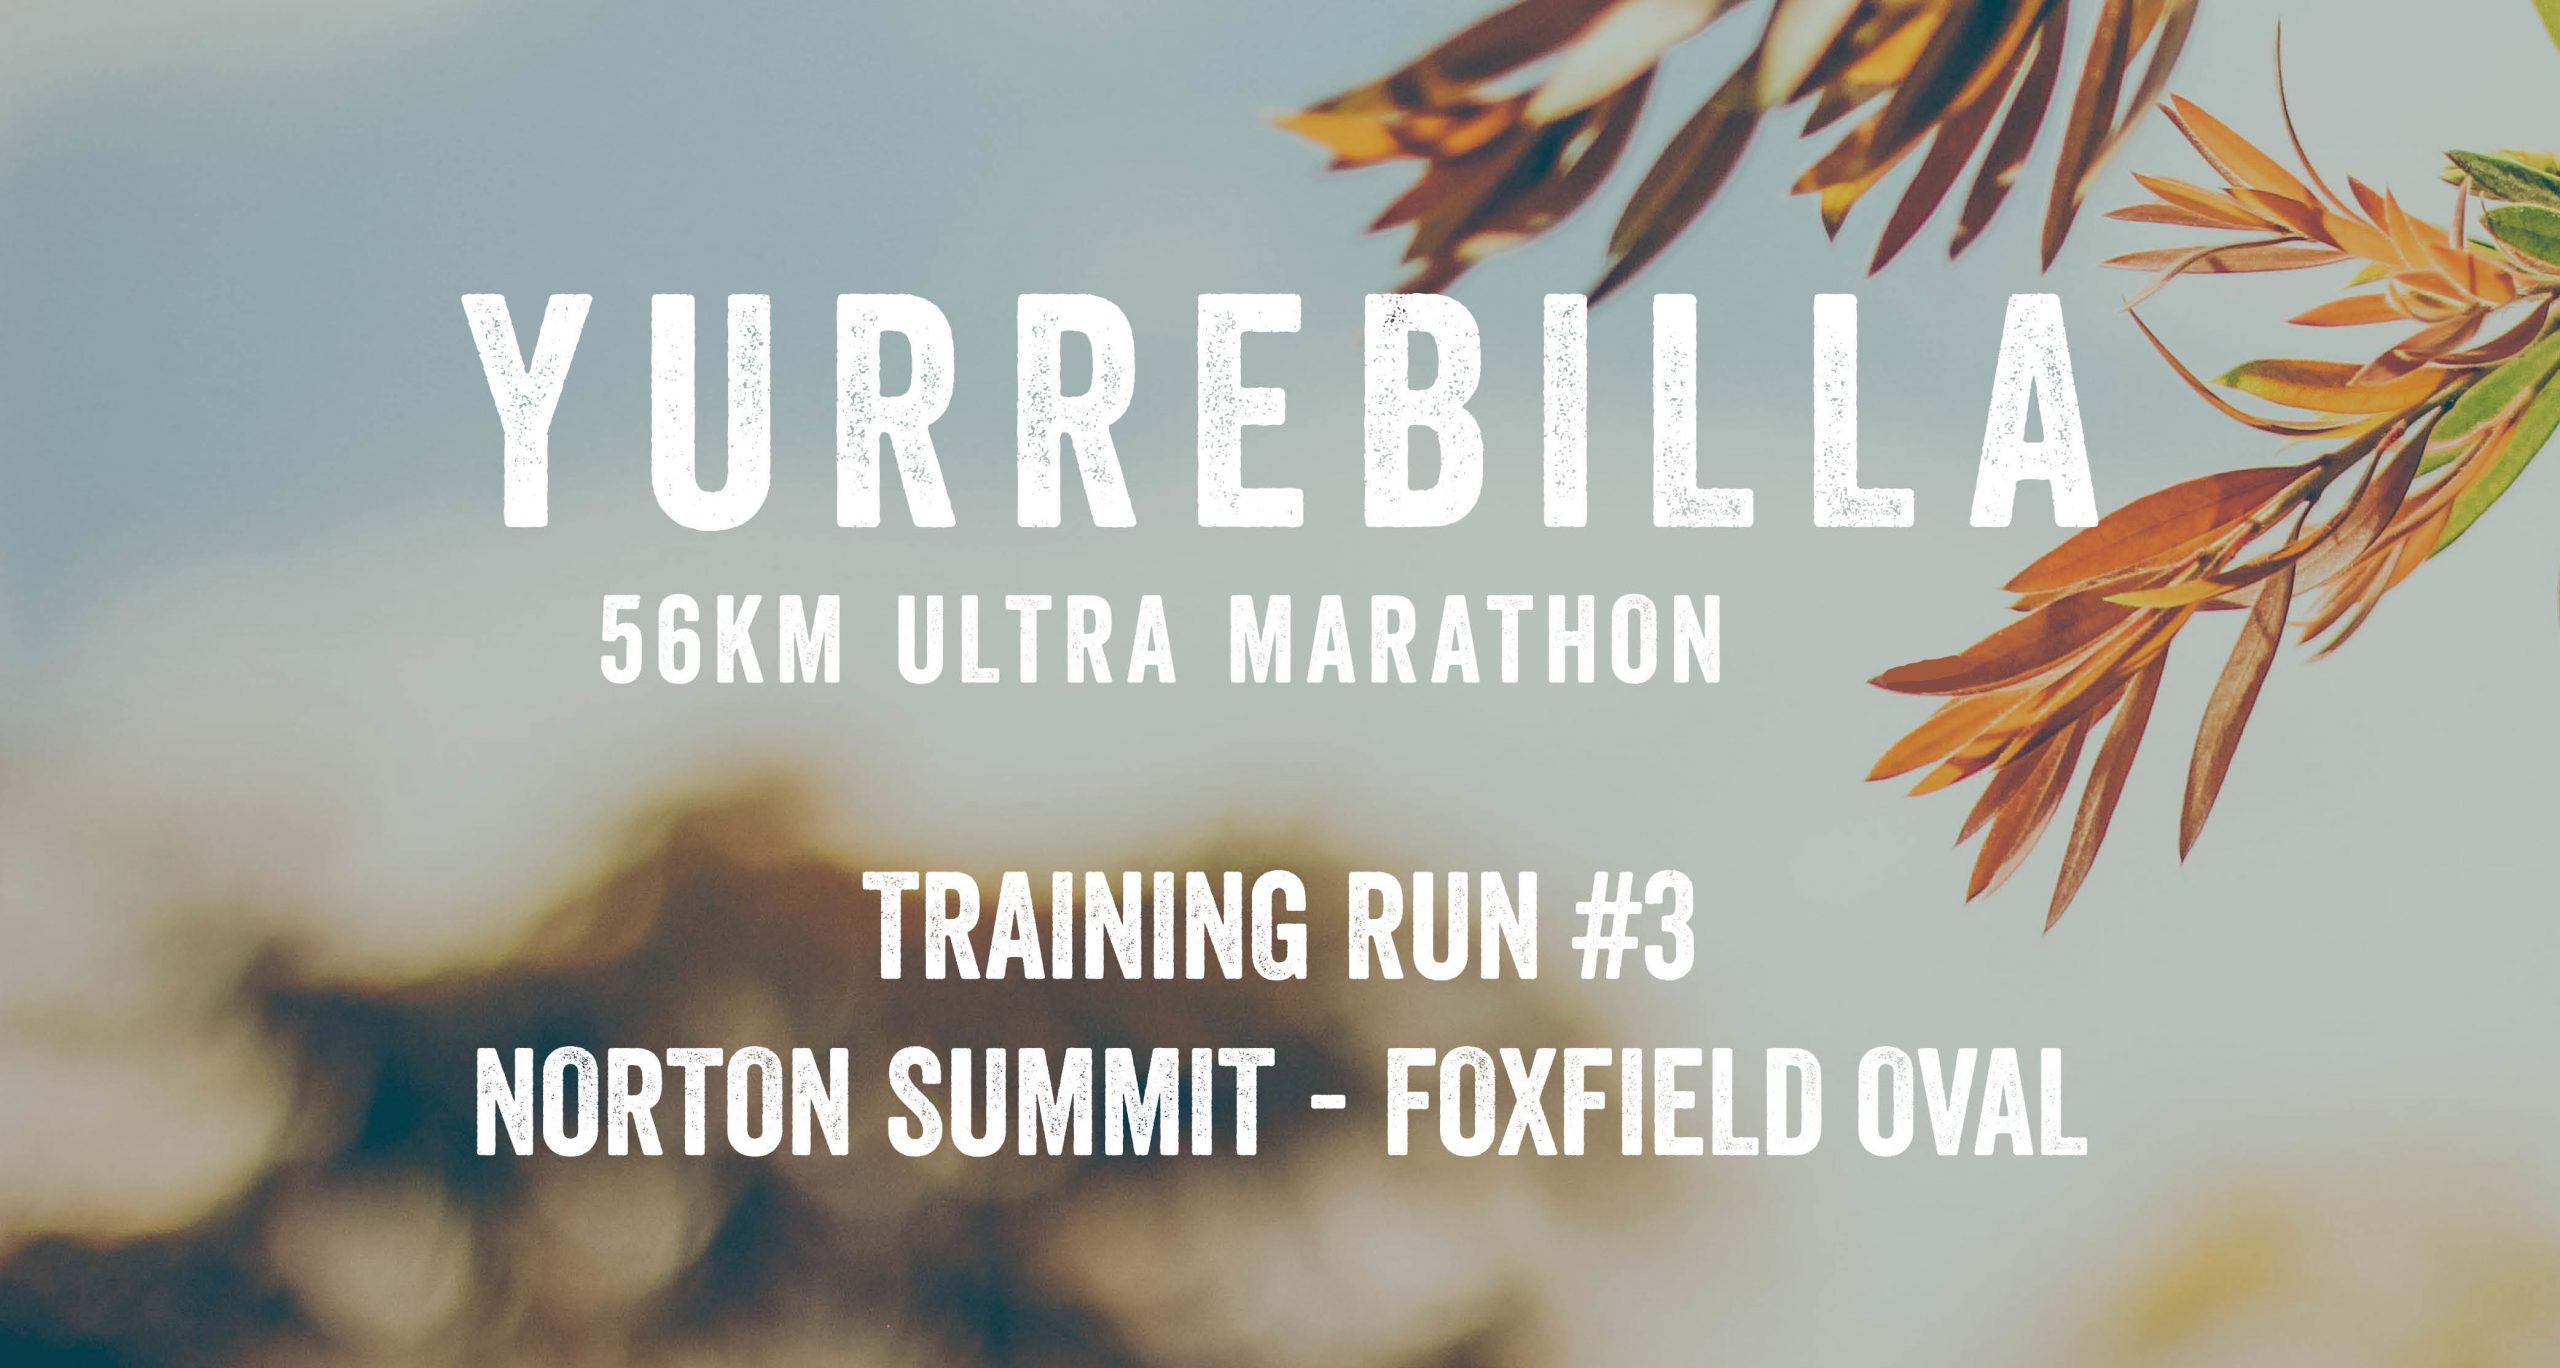 Yurrebilla Training Run 3 scaled